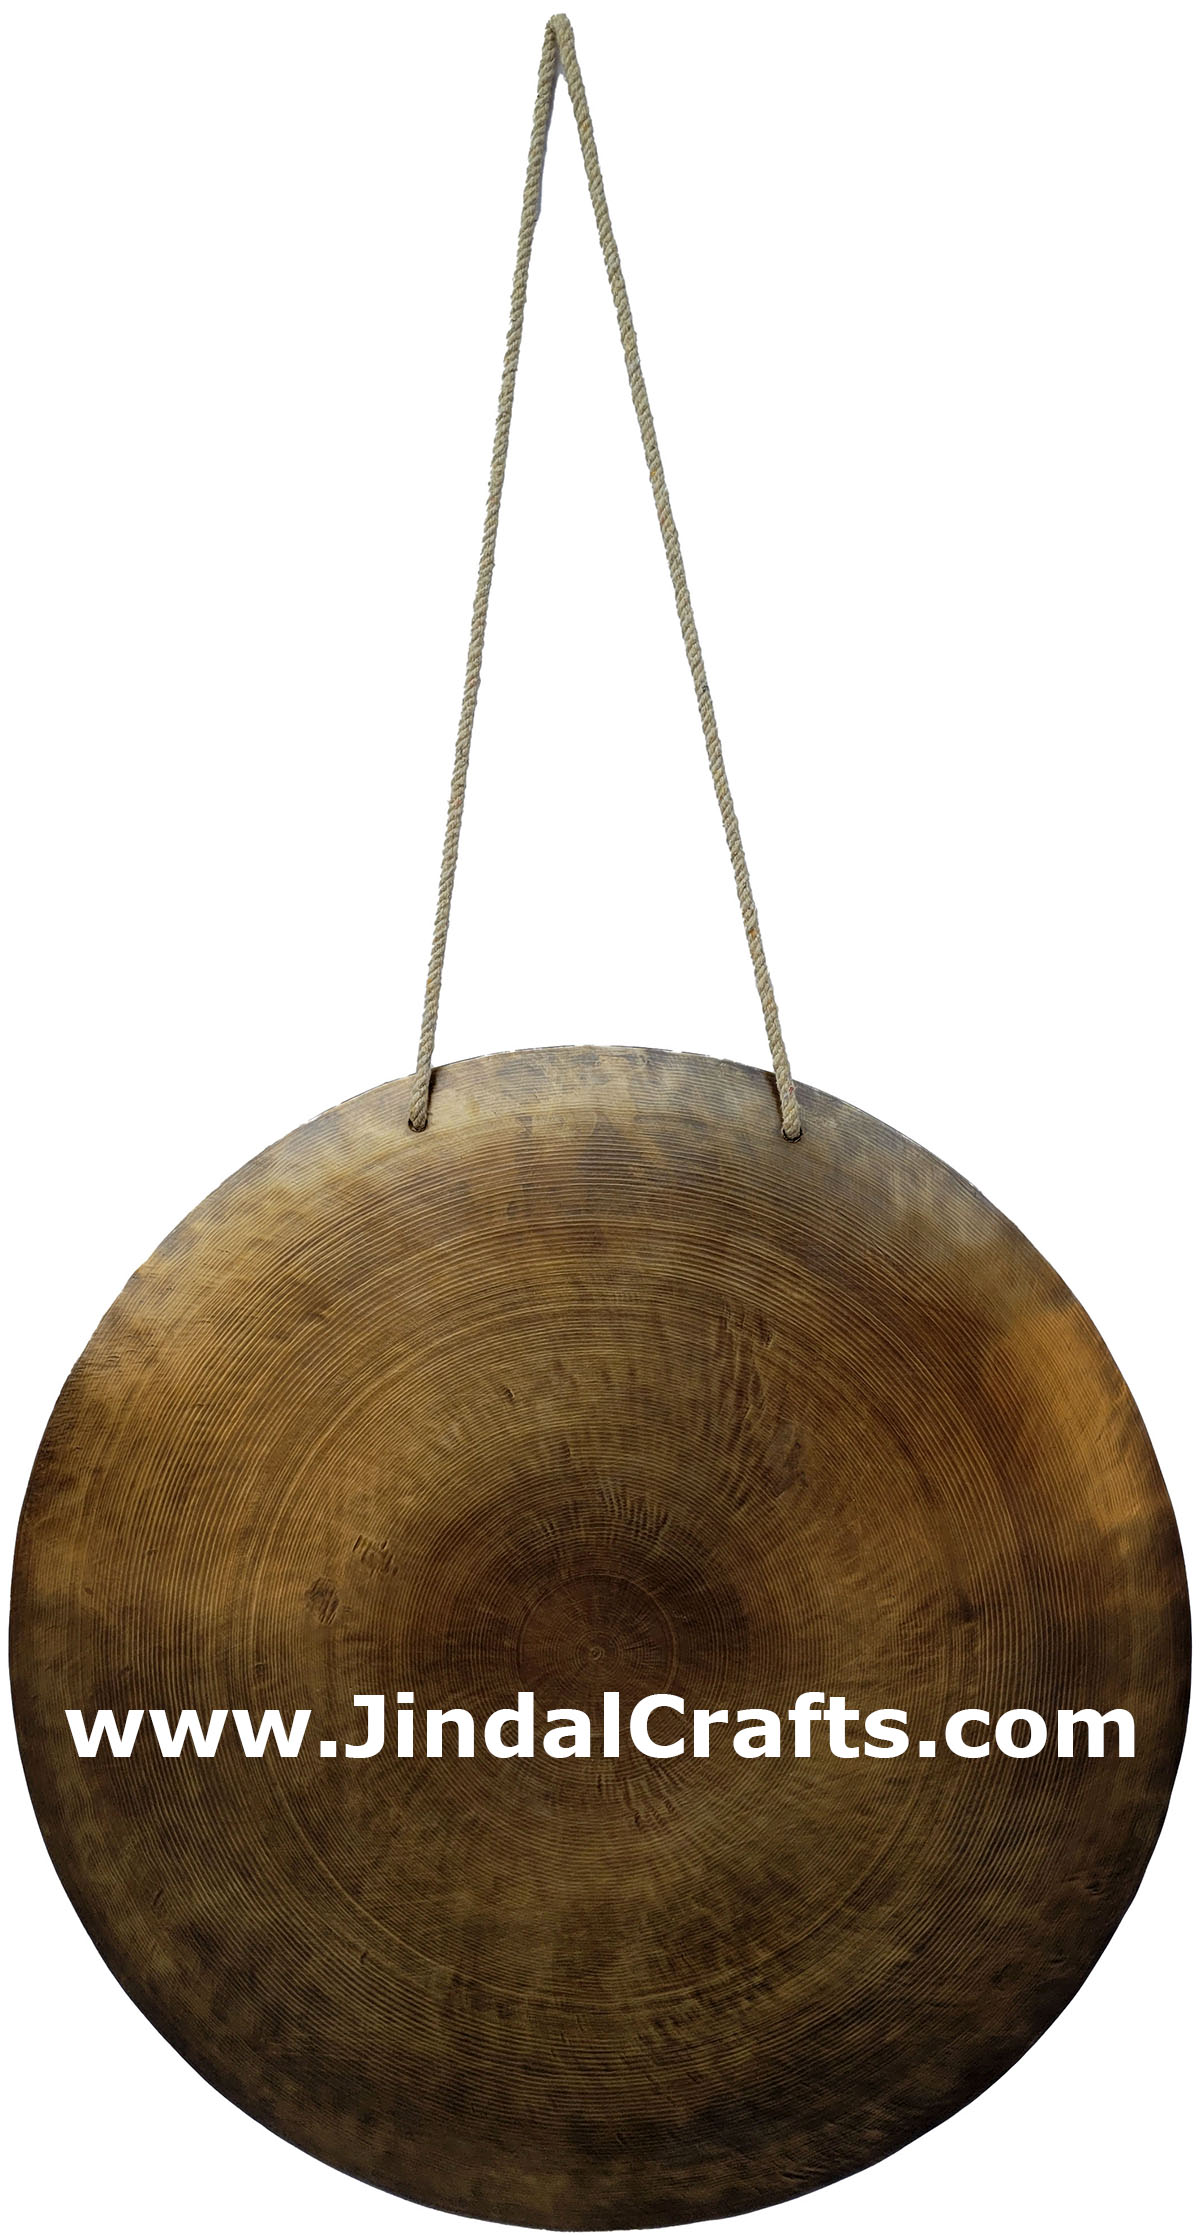 Hand Beaten Gong Bronze Bell India Buddhist Handicrafts